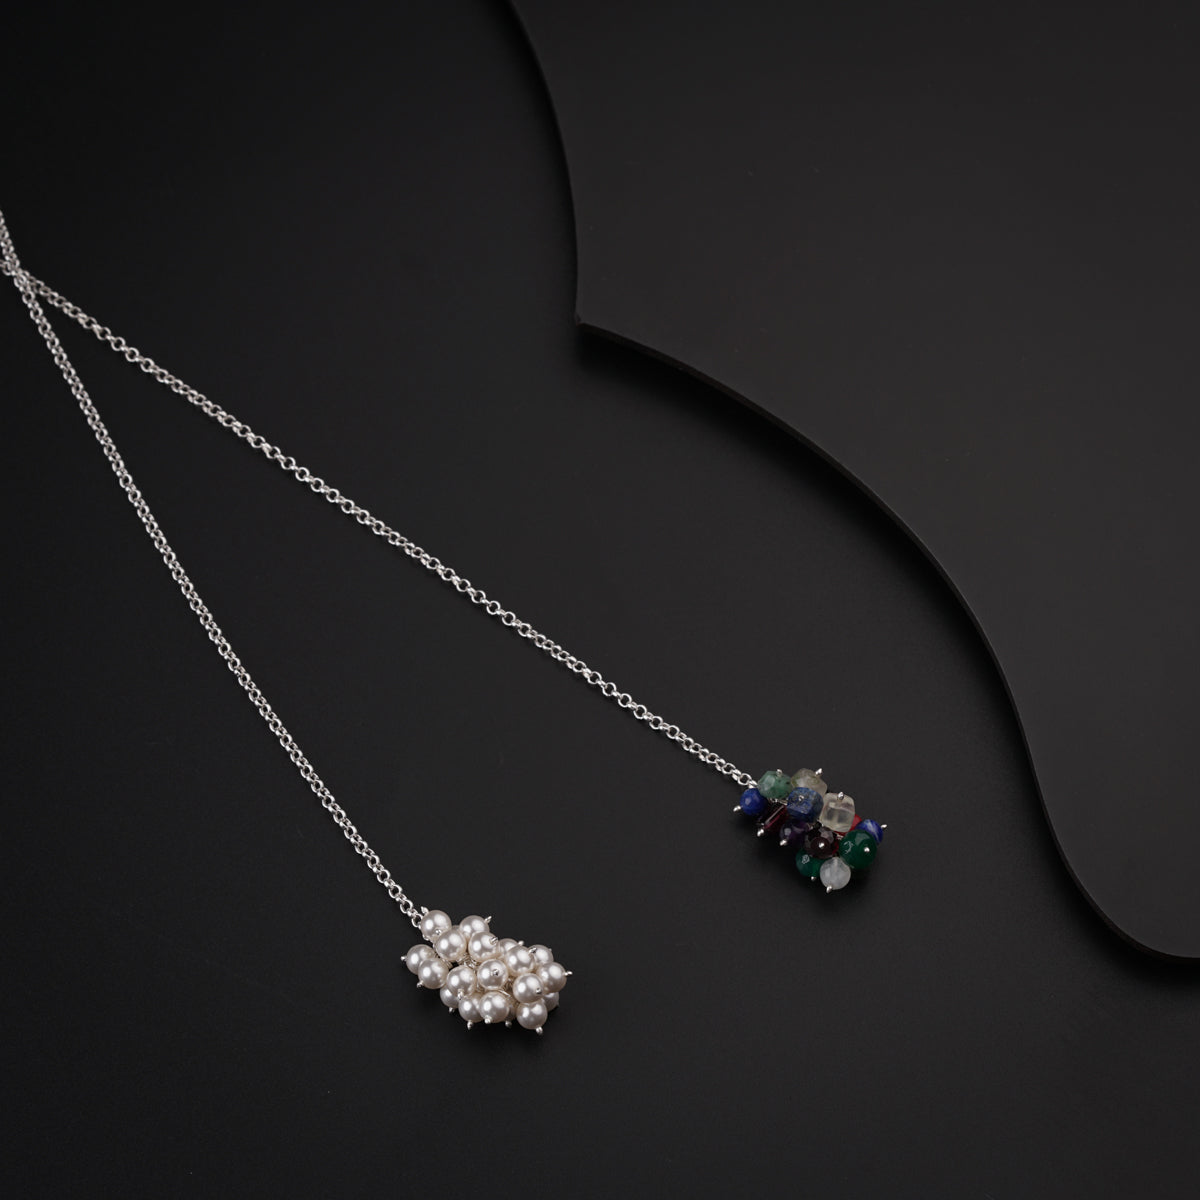 Silver Tie & Wear Necklace with Pearls & Semi Precious Stones